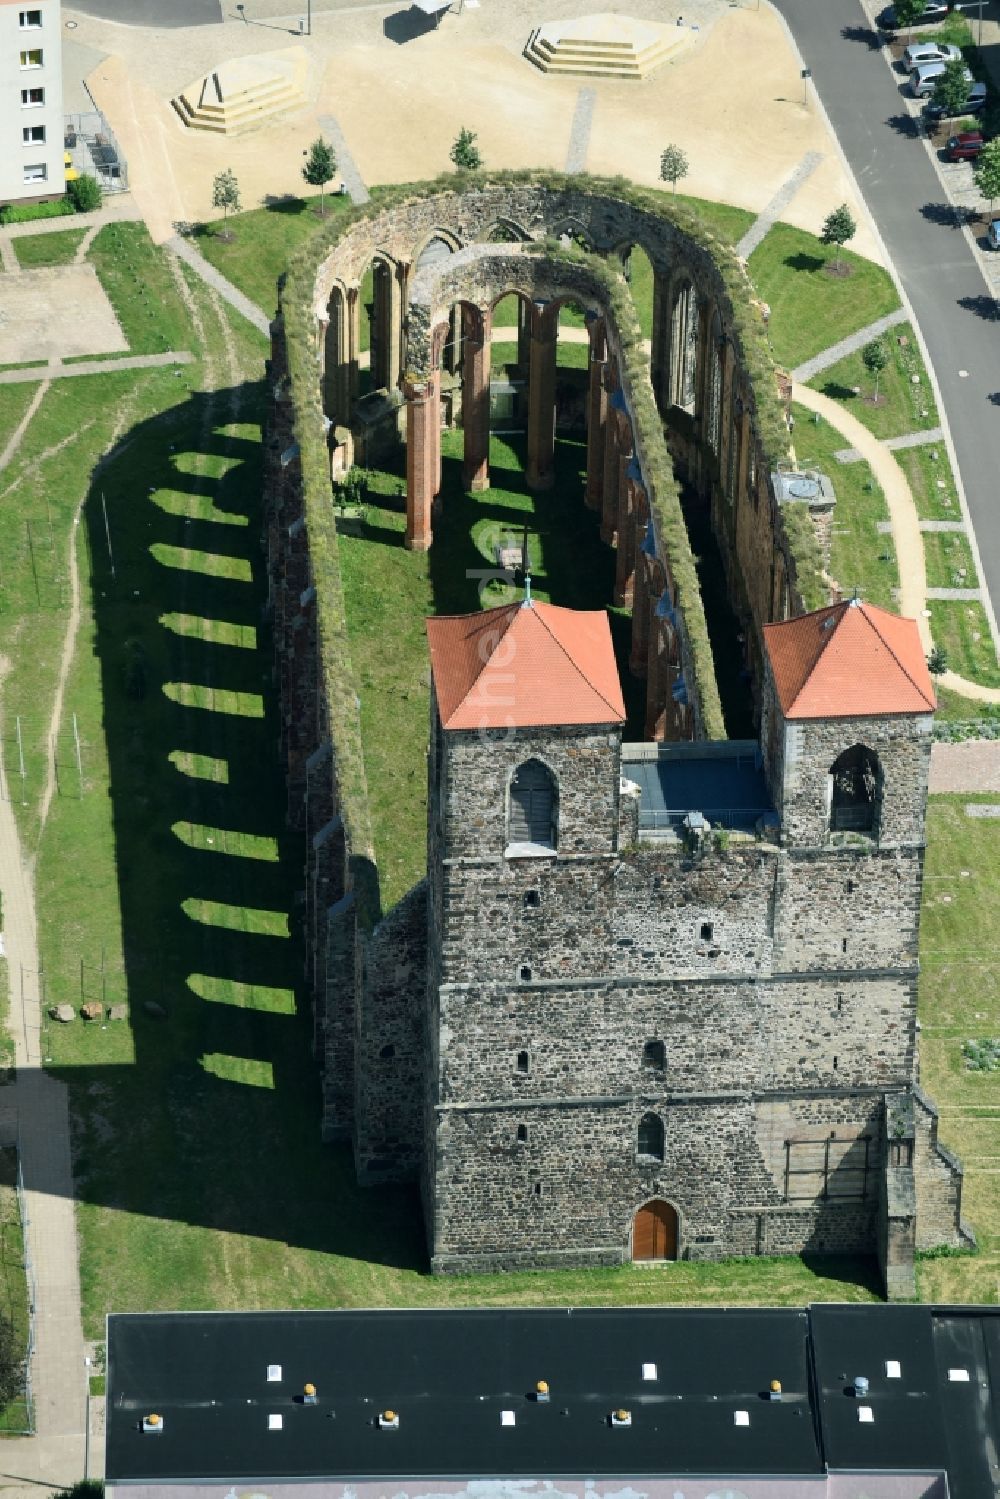 Luftbild Zerbst/Anhalt - Ruine des Kirchengebäude der Sankt Nikolai in Zerbst/Anhalt im Bundesland Sachsen-Anhalt, Deutschland